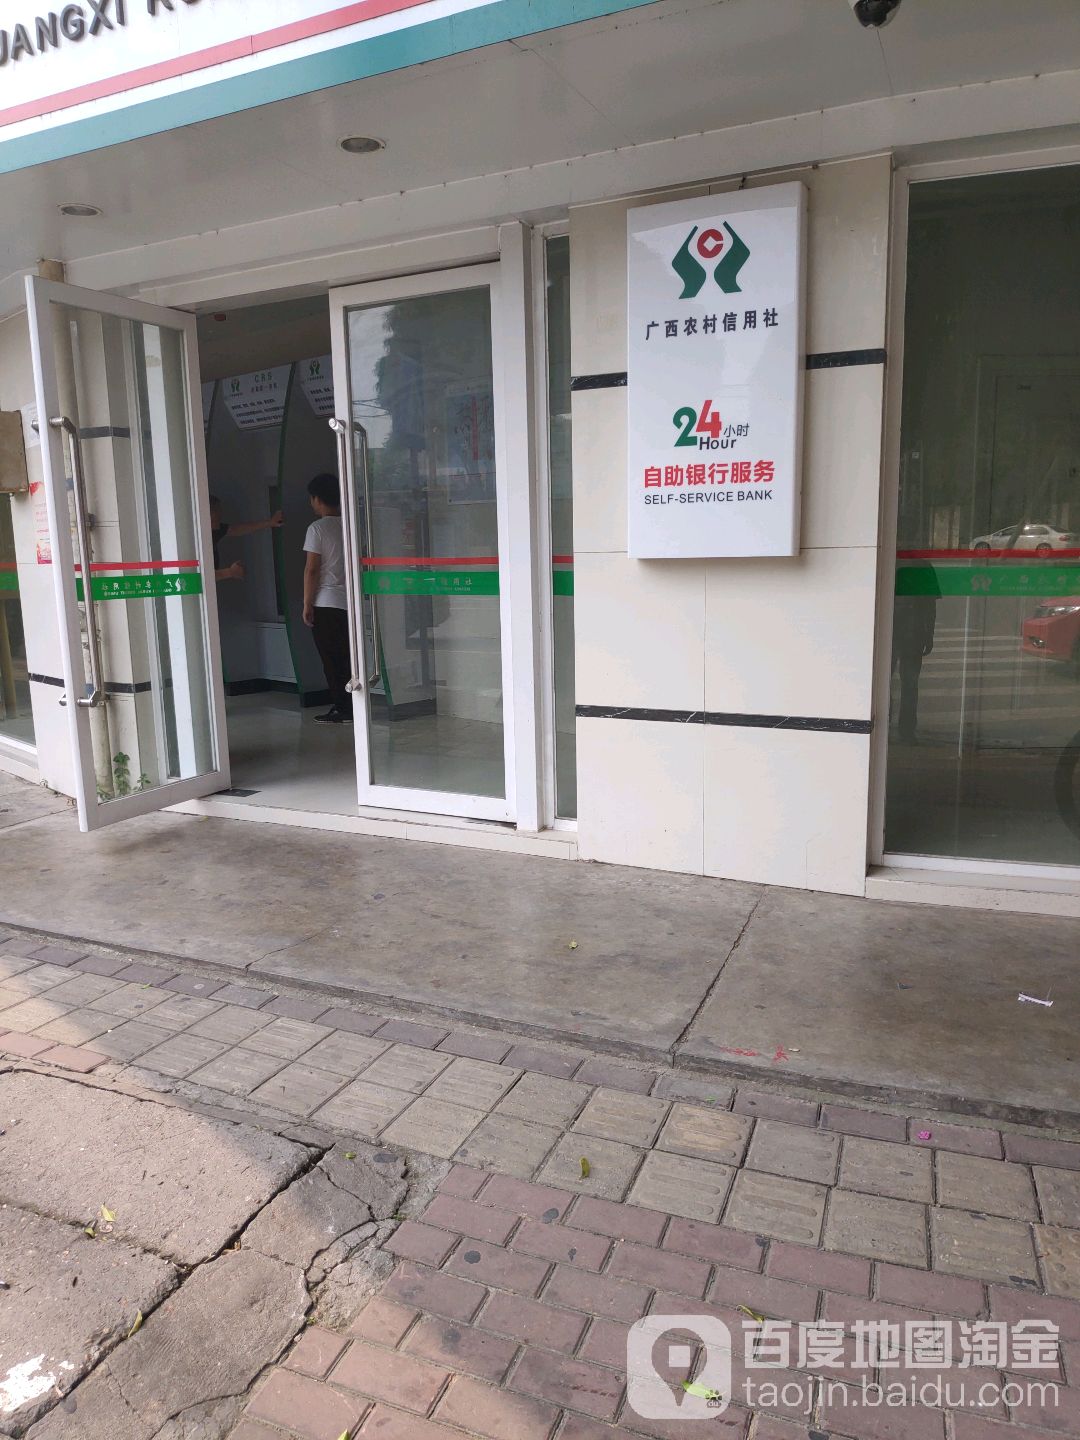 廣西農村信用社24小時自助銀行服務